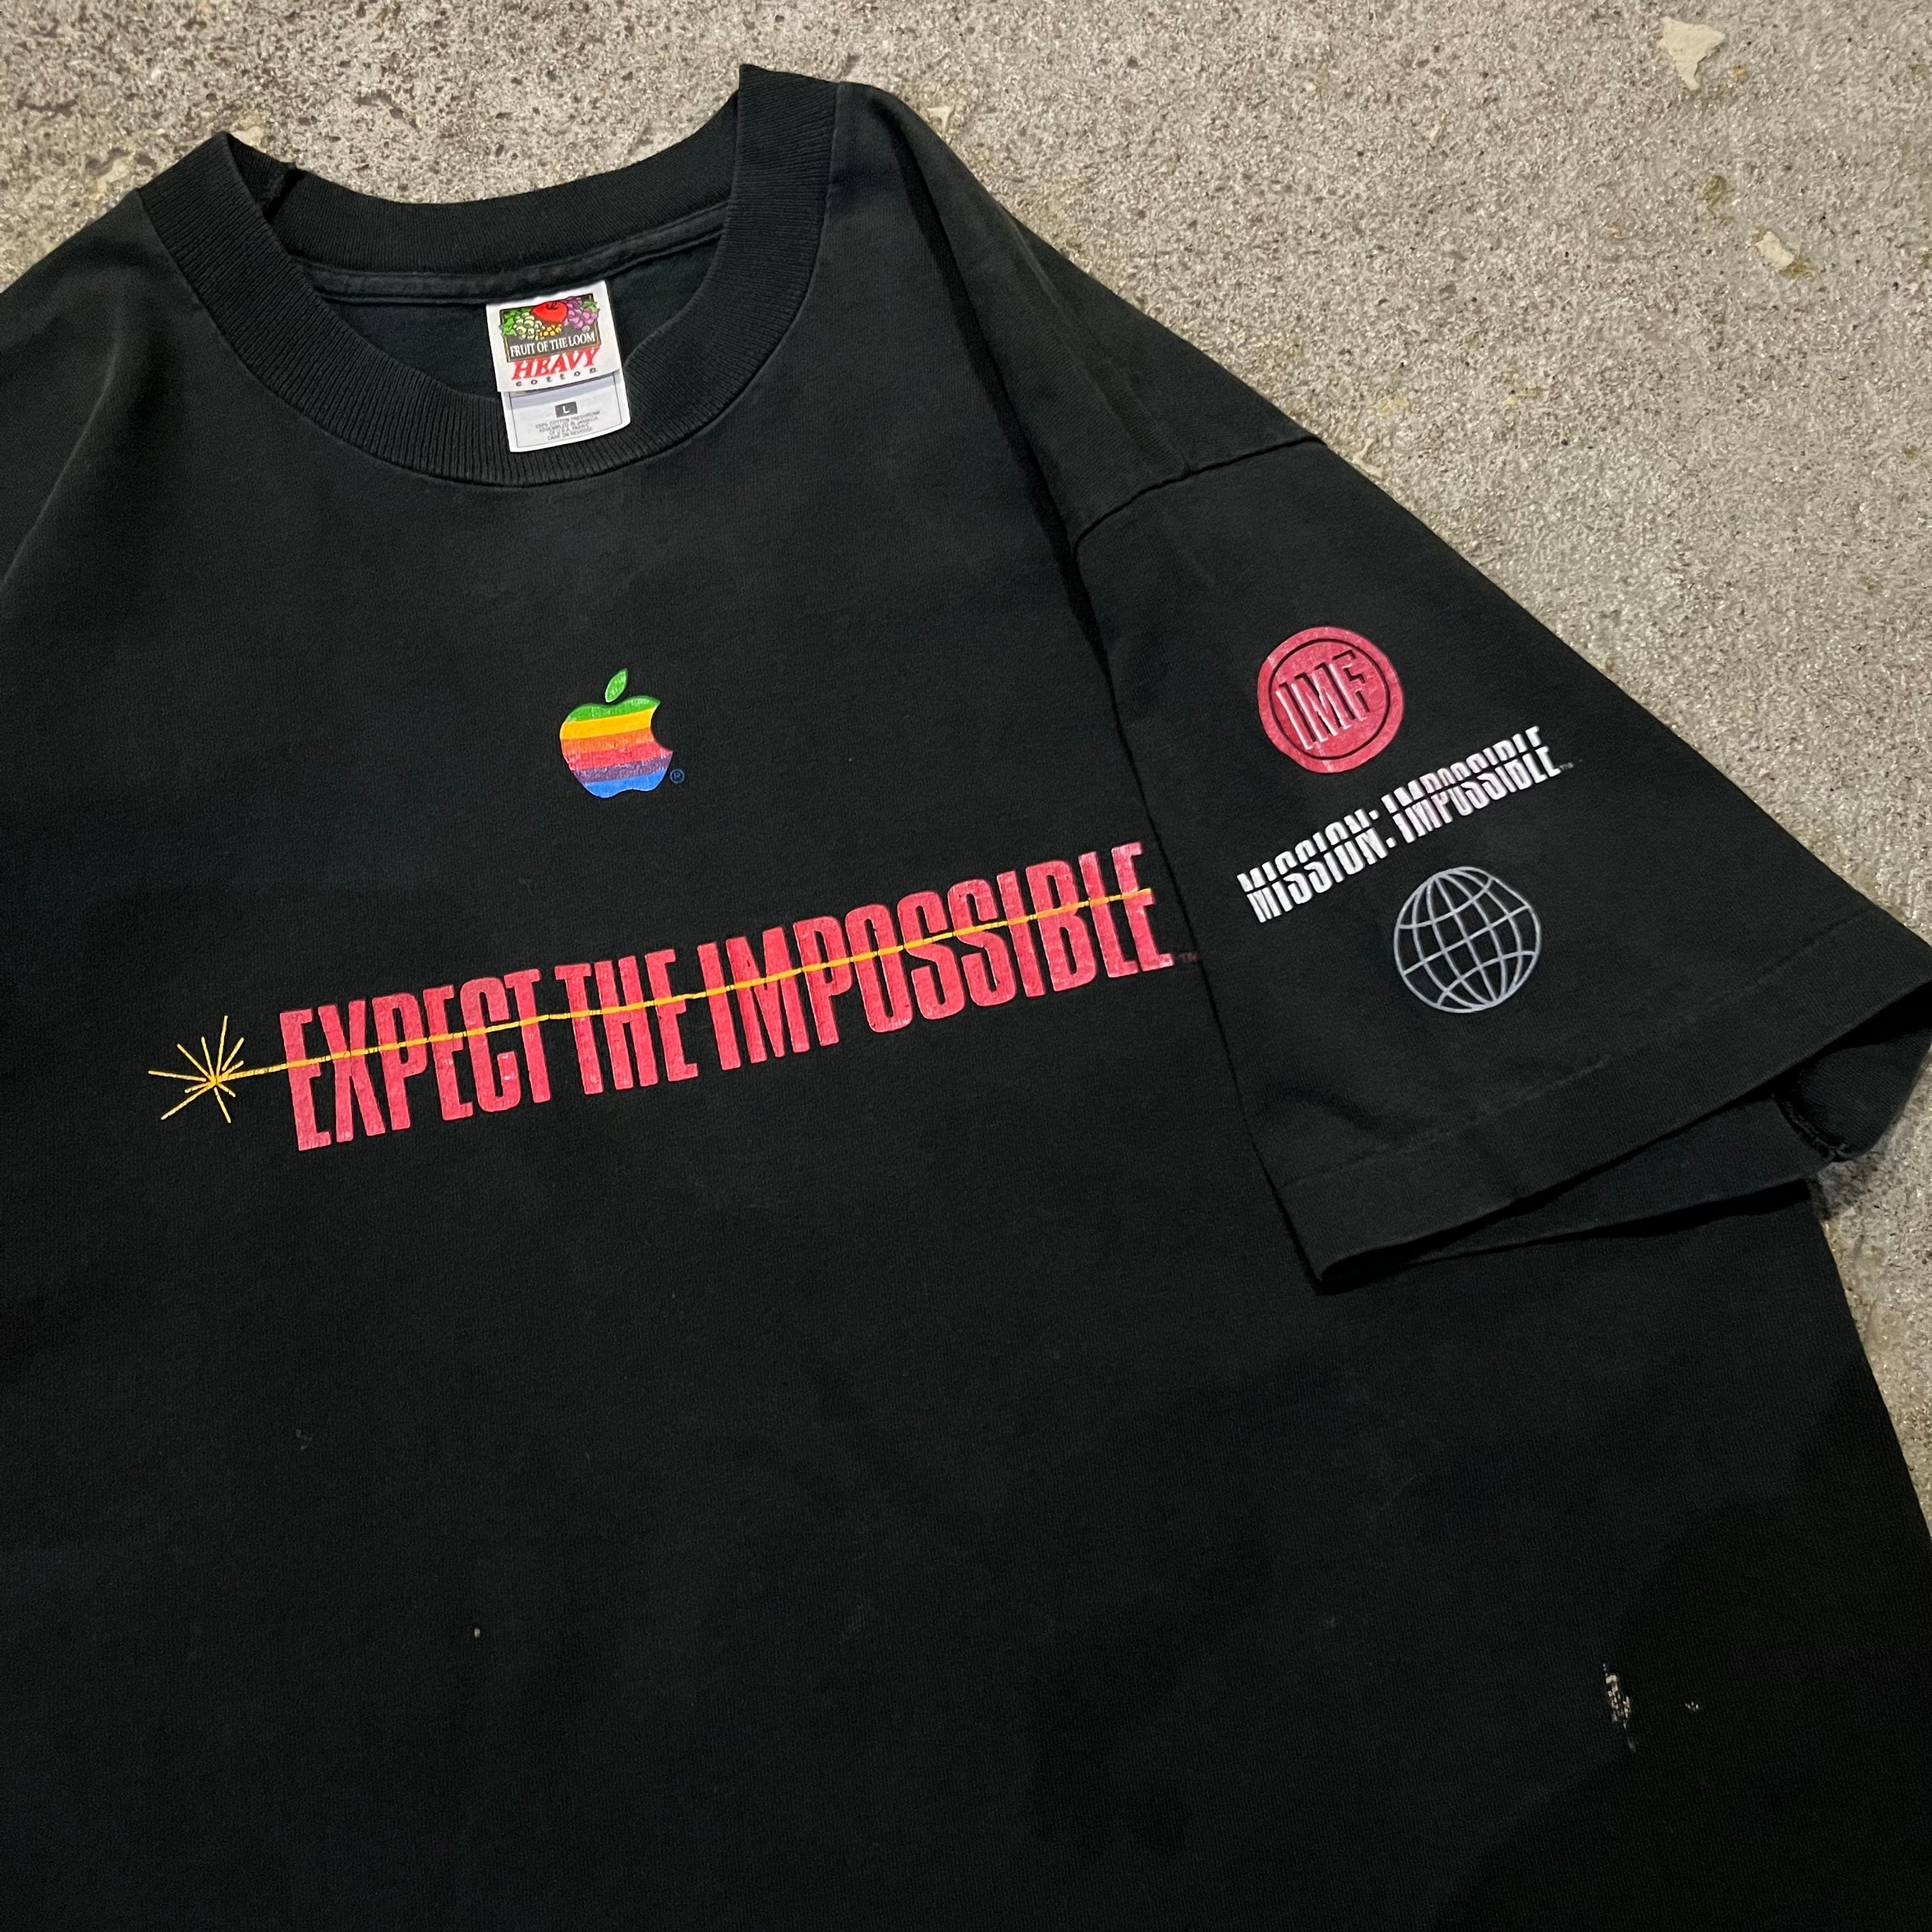 ミッションインポッシブル アップル 90s Tシャツ-